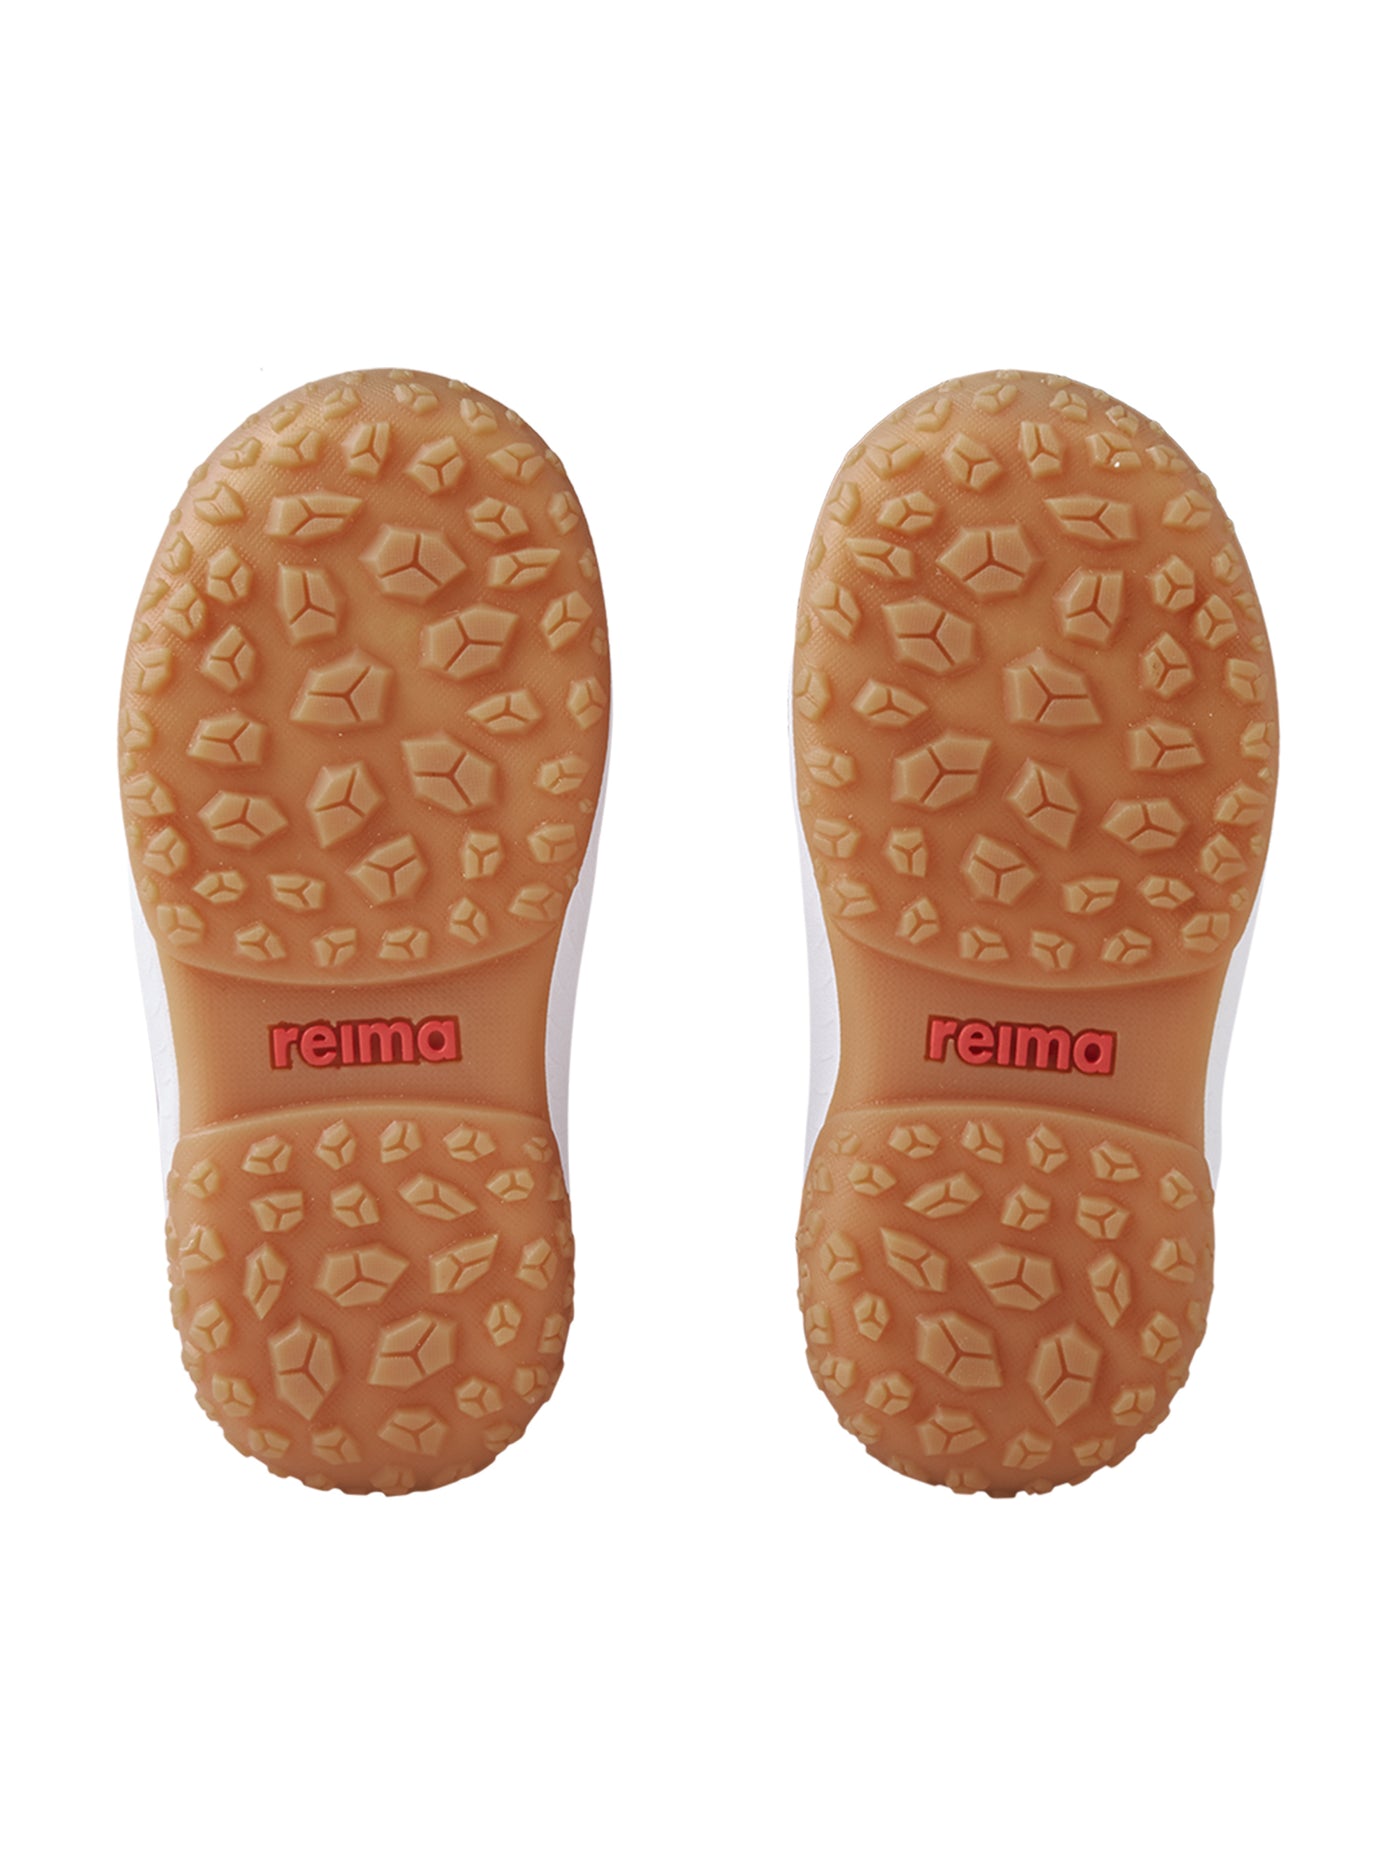 Reiman keltaiset vedenpitävät Samooja-talvikengät kengänpohjat kuvattuna